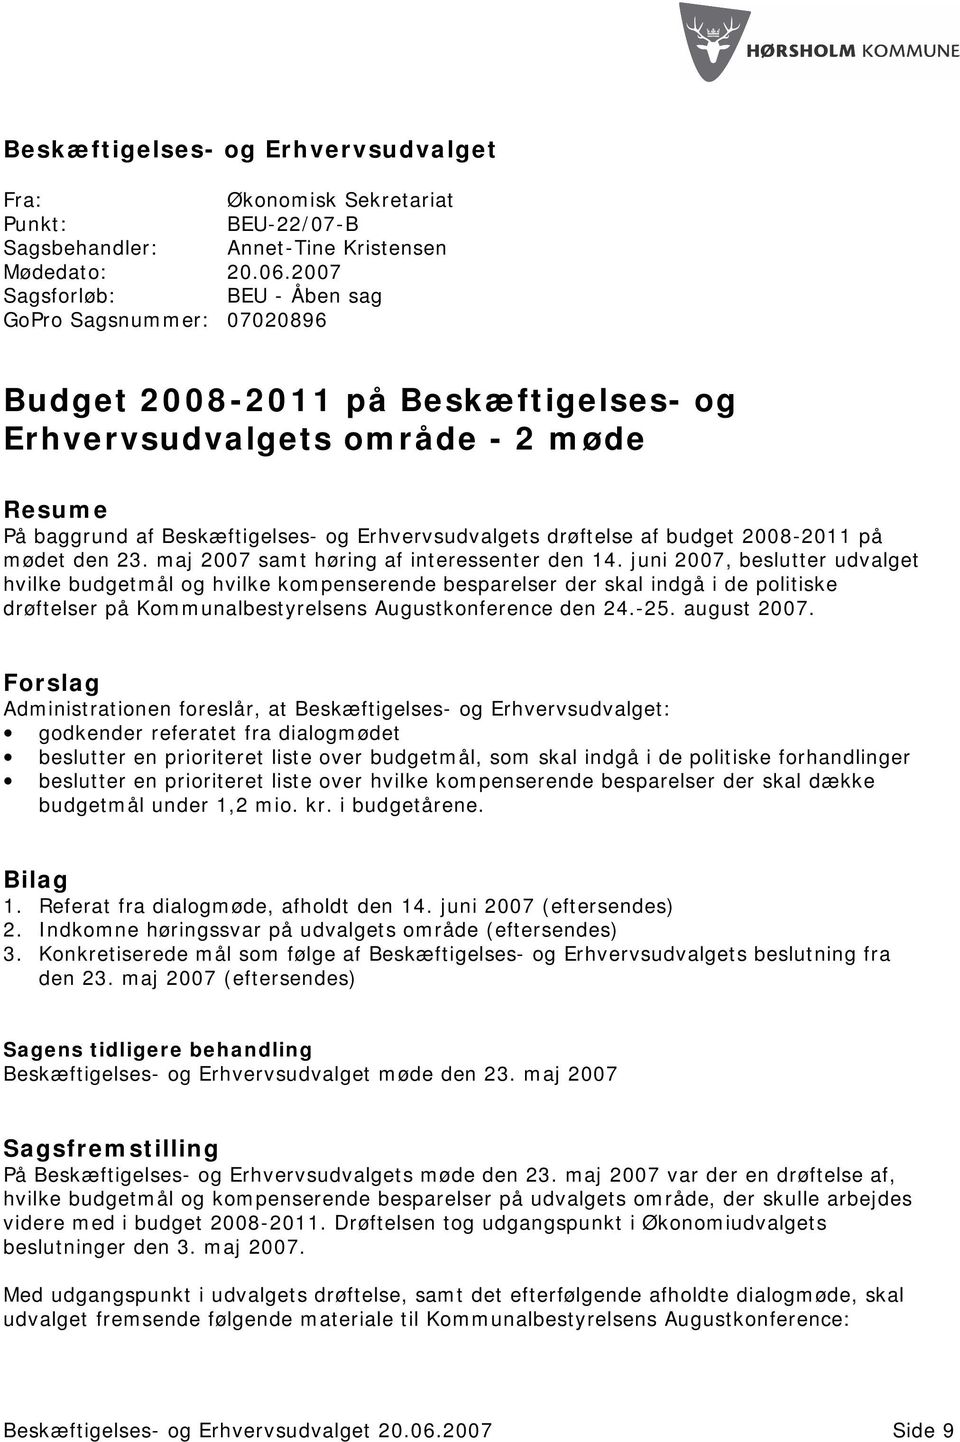 drøftelse af budget 2008-2011 på mødet den 23. maj 2007 samt høring af interessenter den 14.